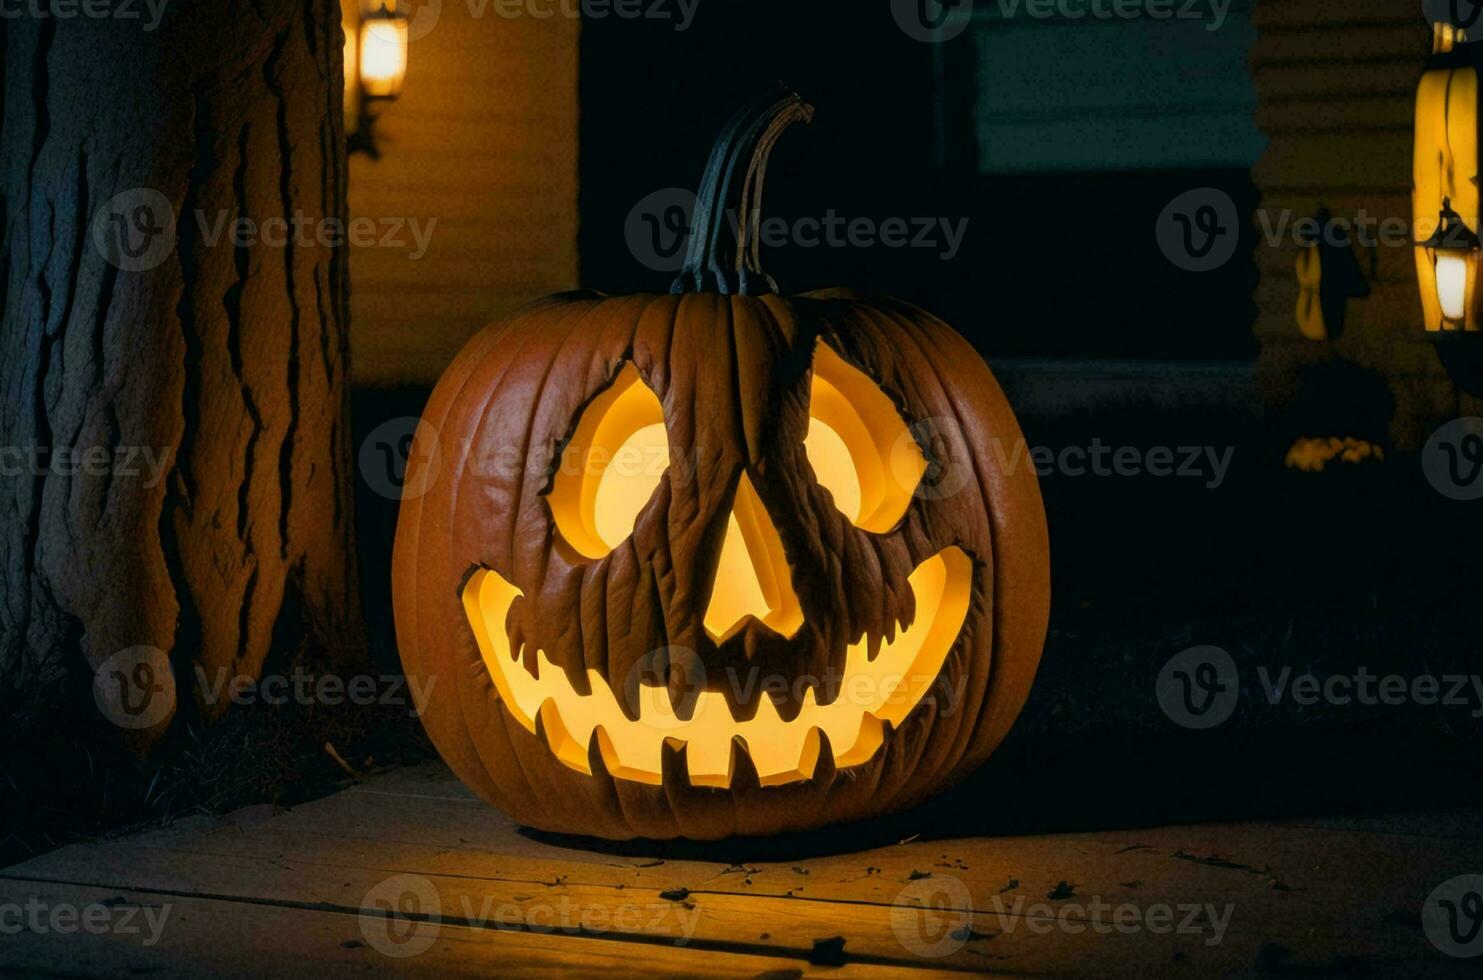 läskigt halloween firande, var kusligt siffror i ondska kostymer ströva omkring genom en vagt belyst besatt hus. foto